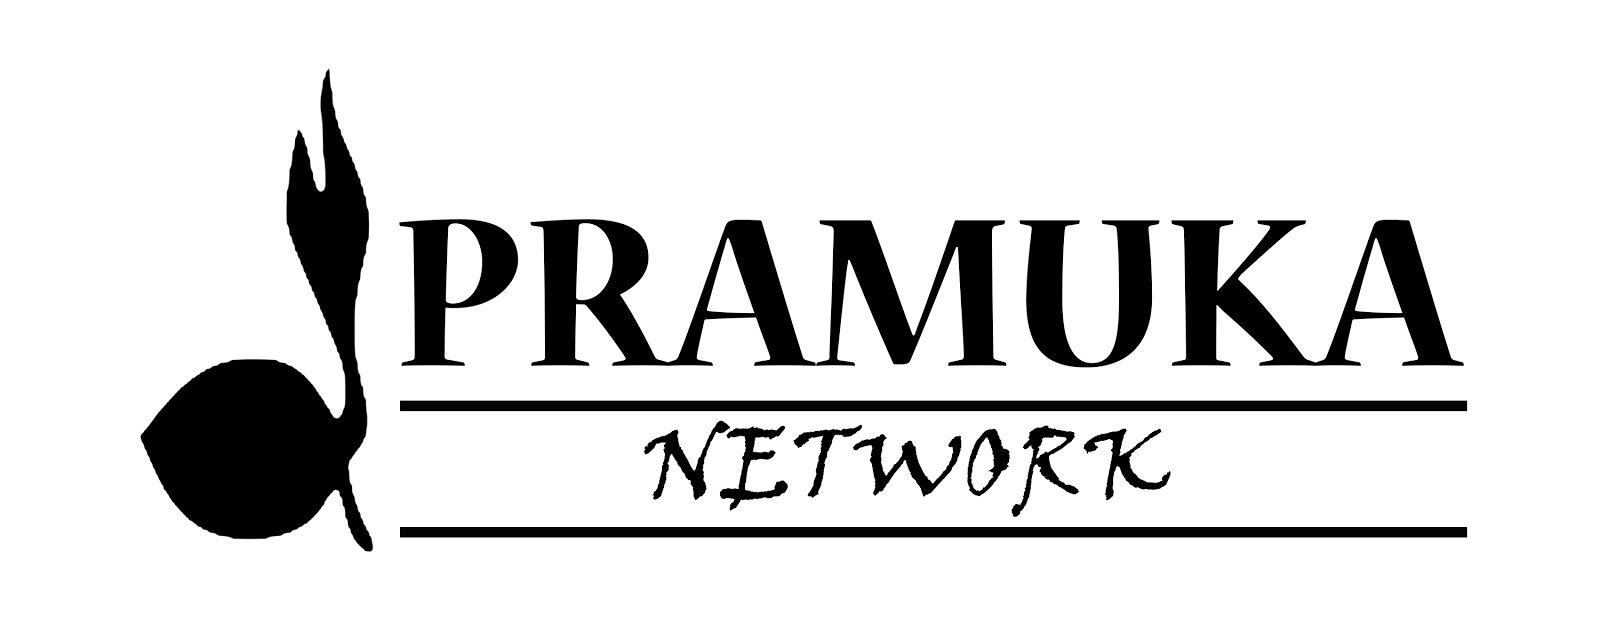 Pramuka Network